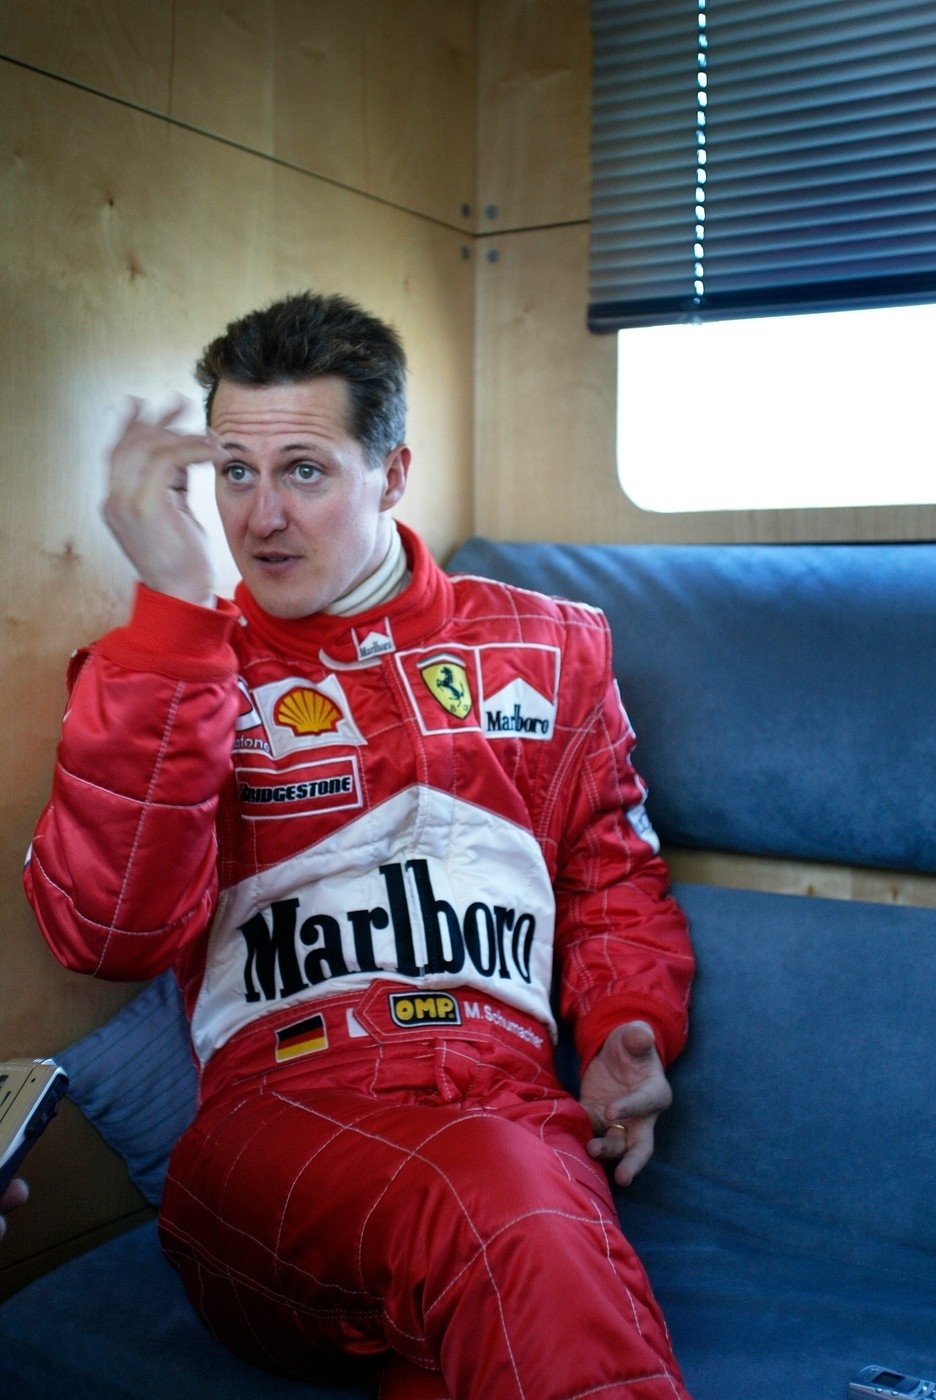 Michael Schumacher odpočívá během závodu formule 1